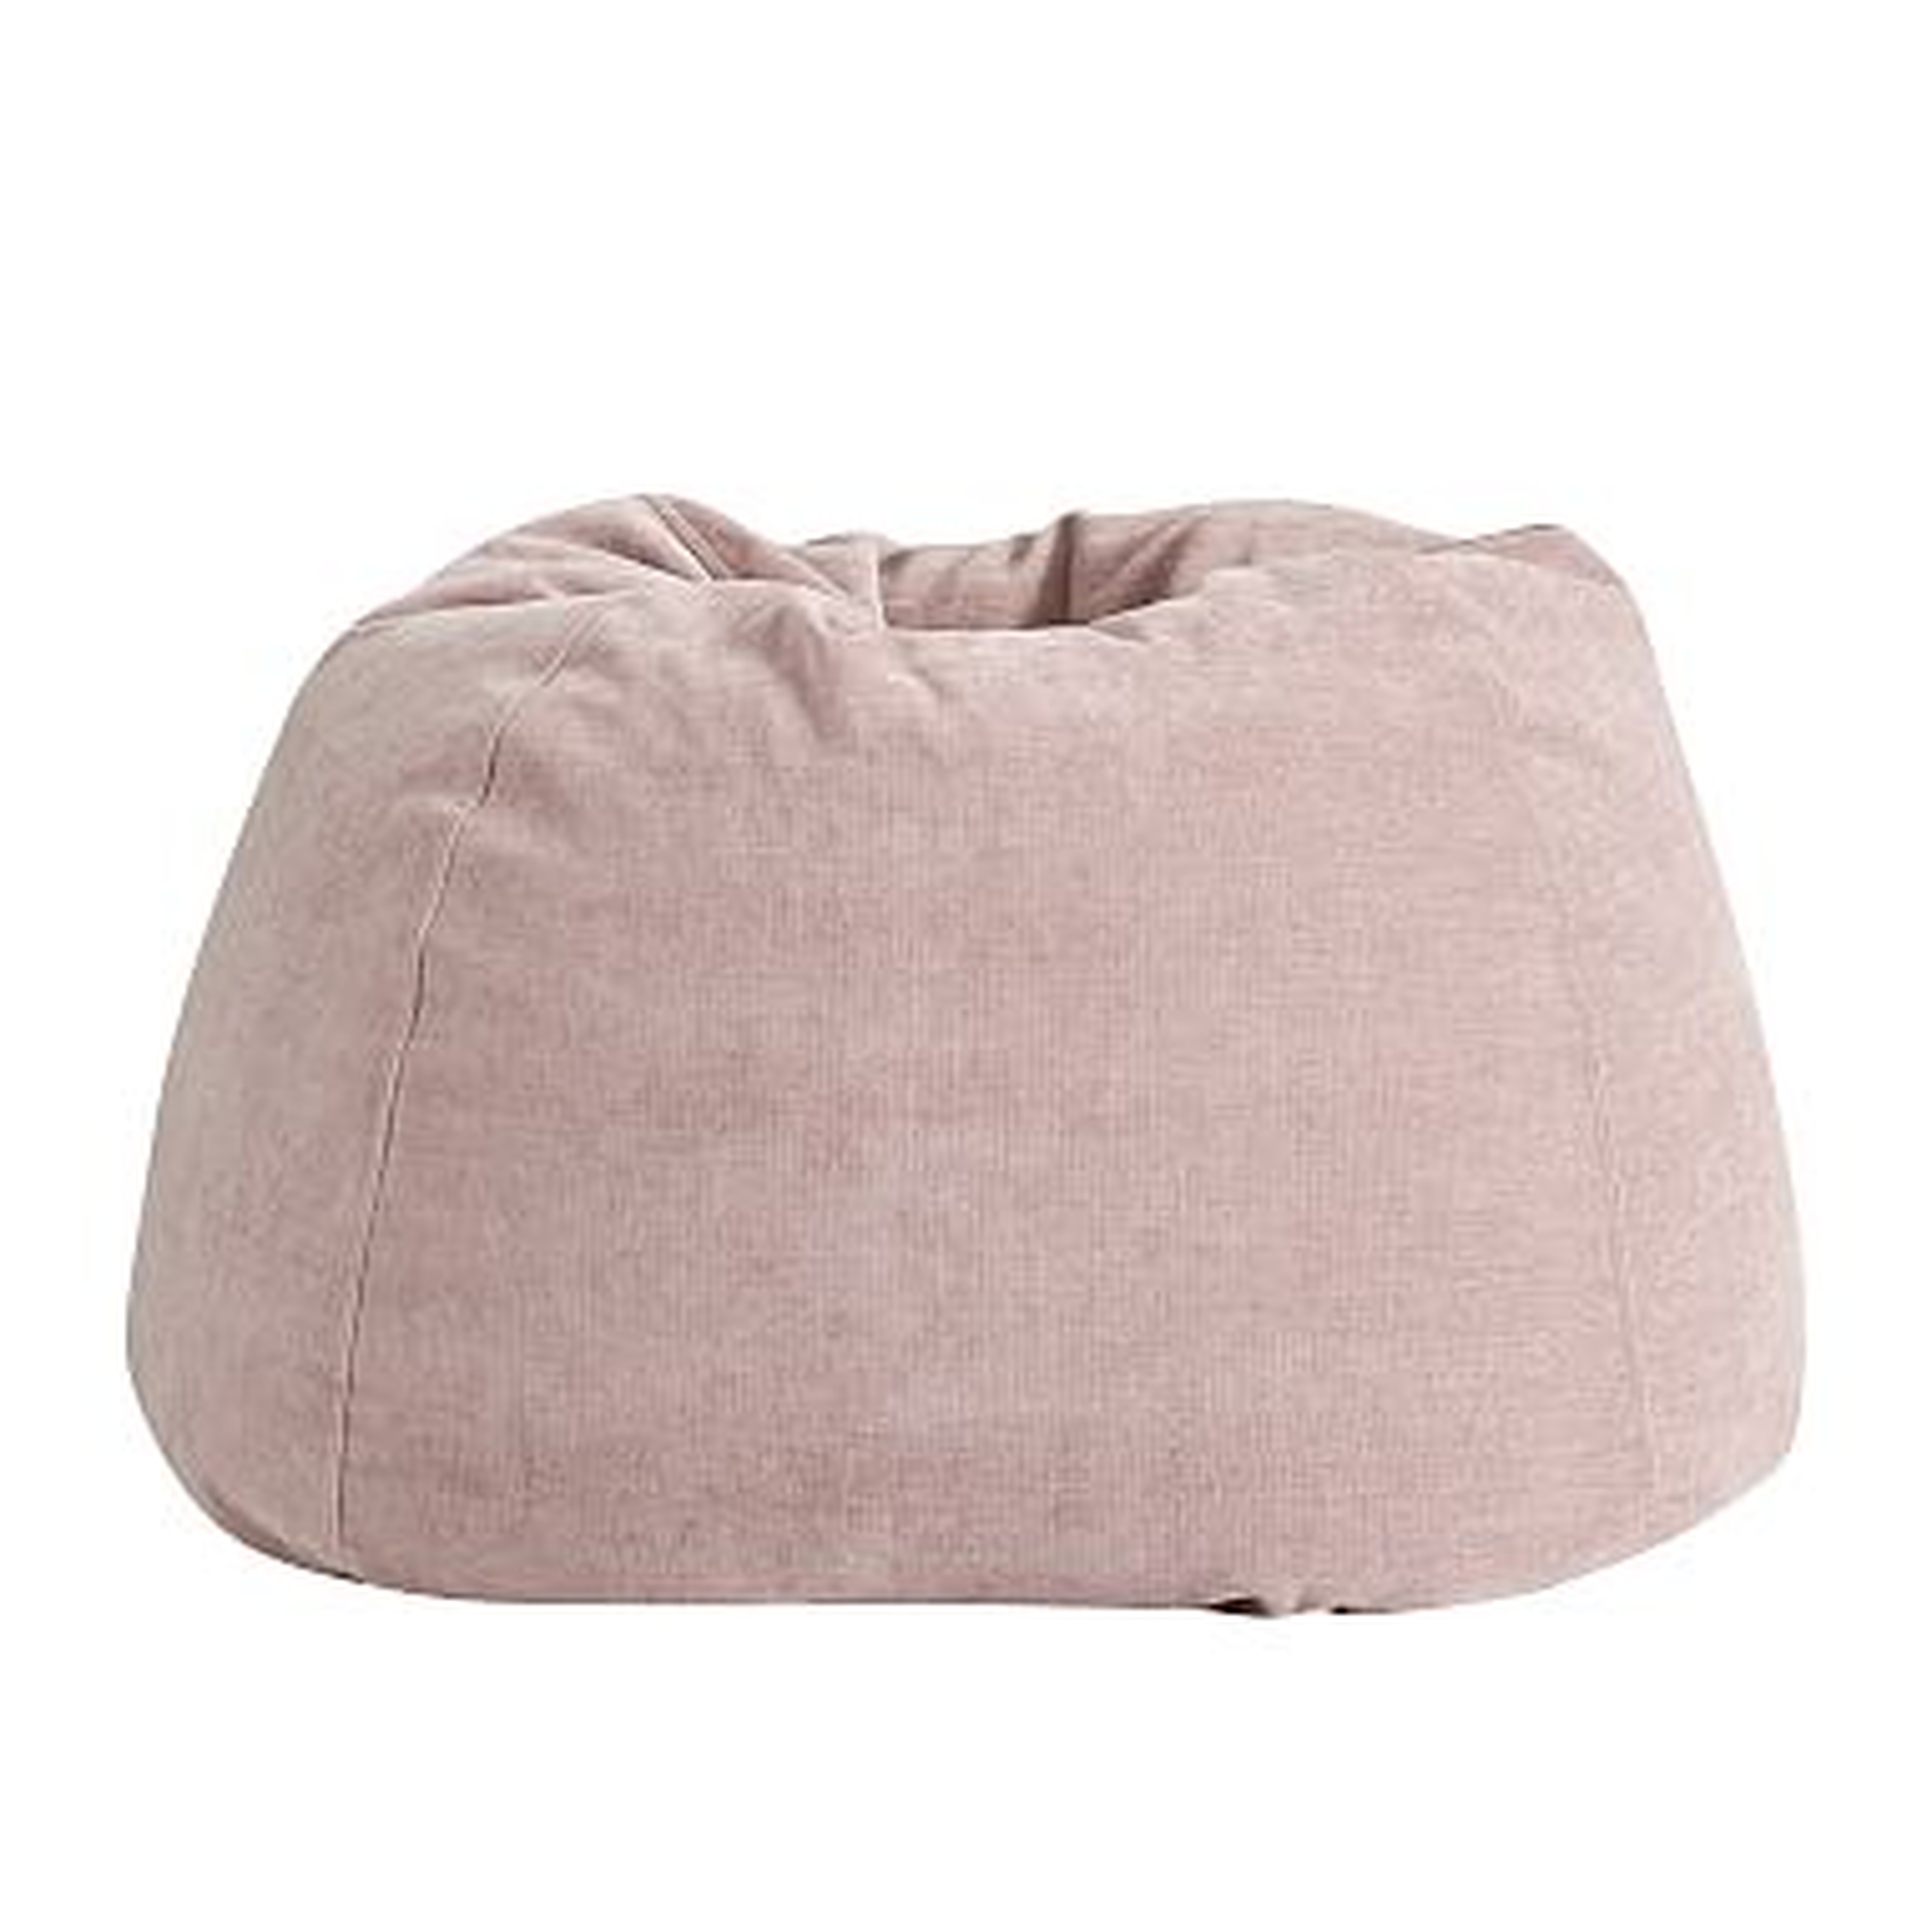 west elm x pbt Velvet Bean Bag Chair Set (Cover + Insert), Large, Distressed Velvet Light Pink - Pottery Barn Teen